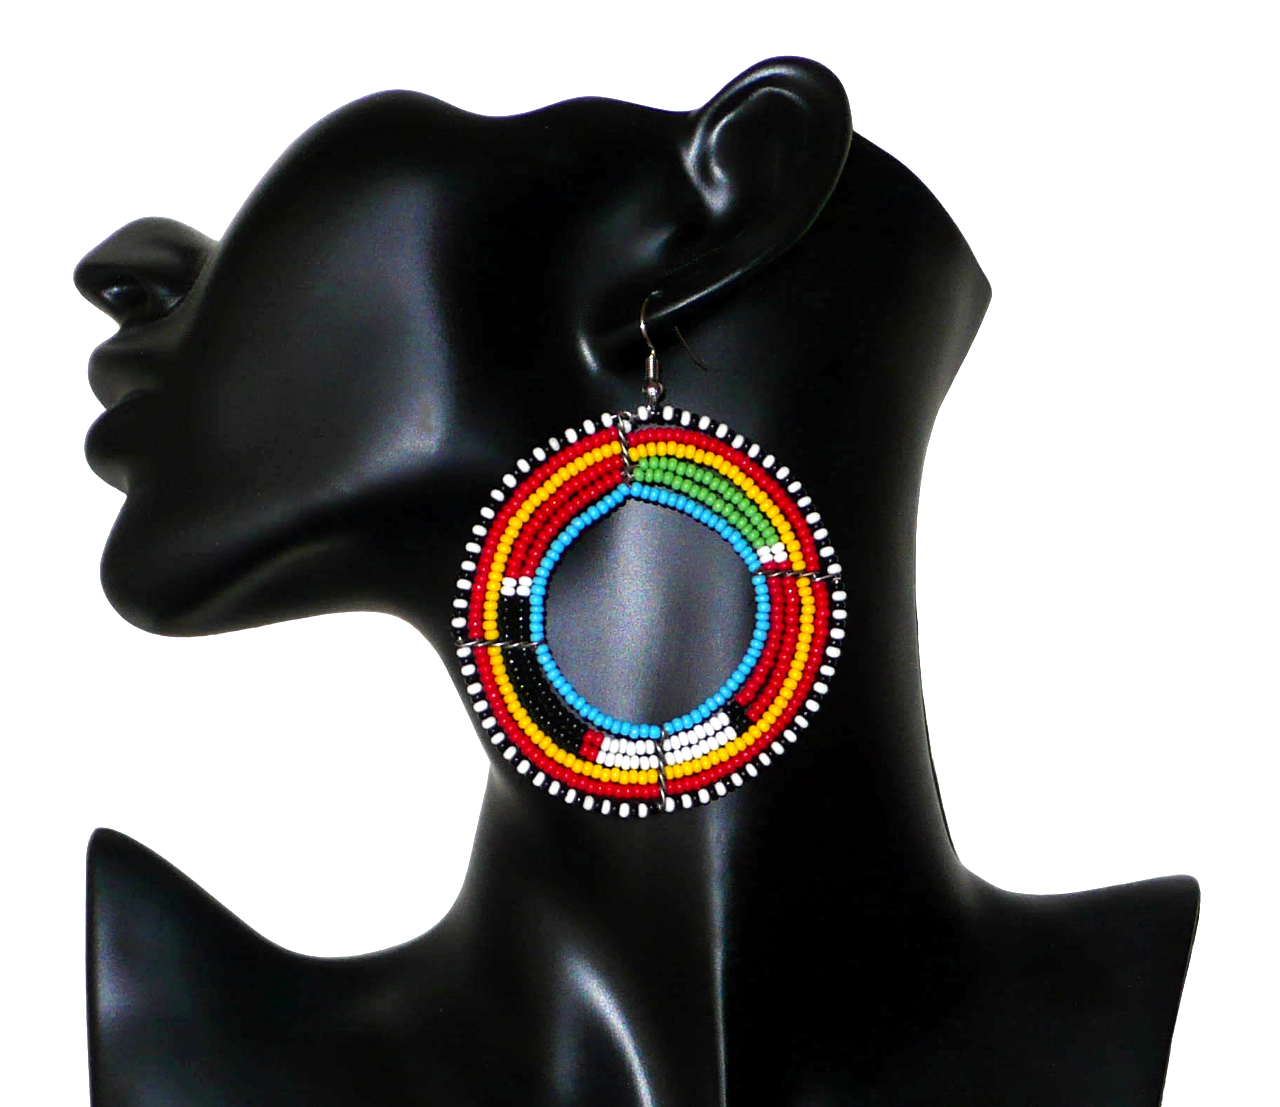 Boucles d'oreilles africaines traditionnelles. Créoles Massai perlées composées de perles de rocaille bleues et multicolores enfilées sur six rangées de fils de fer montés en forme de cercles. Surdimensionnées, elles mesurent 8 cm de long et 6,5 cm de large et se portent avec des crochets en acier inoxydable sur des oreilles percées. Elles sont ici présentées sur un mannequin. Timeless Fineries